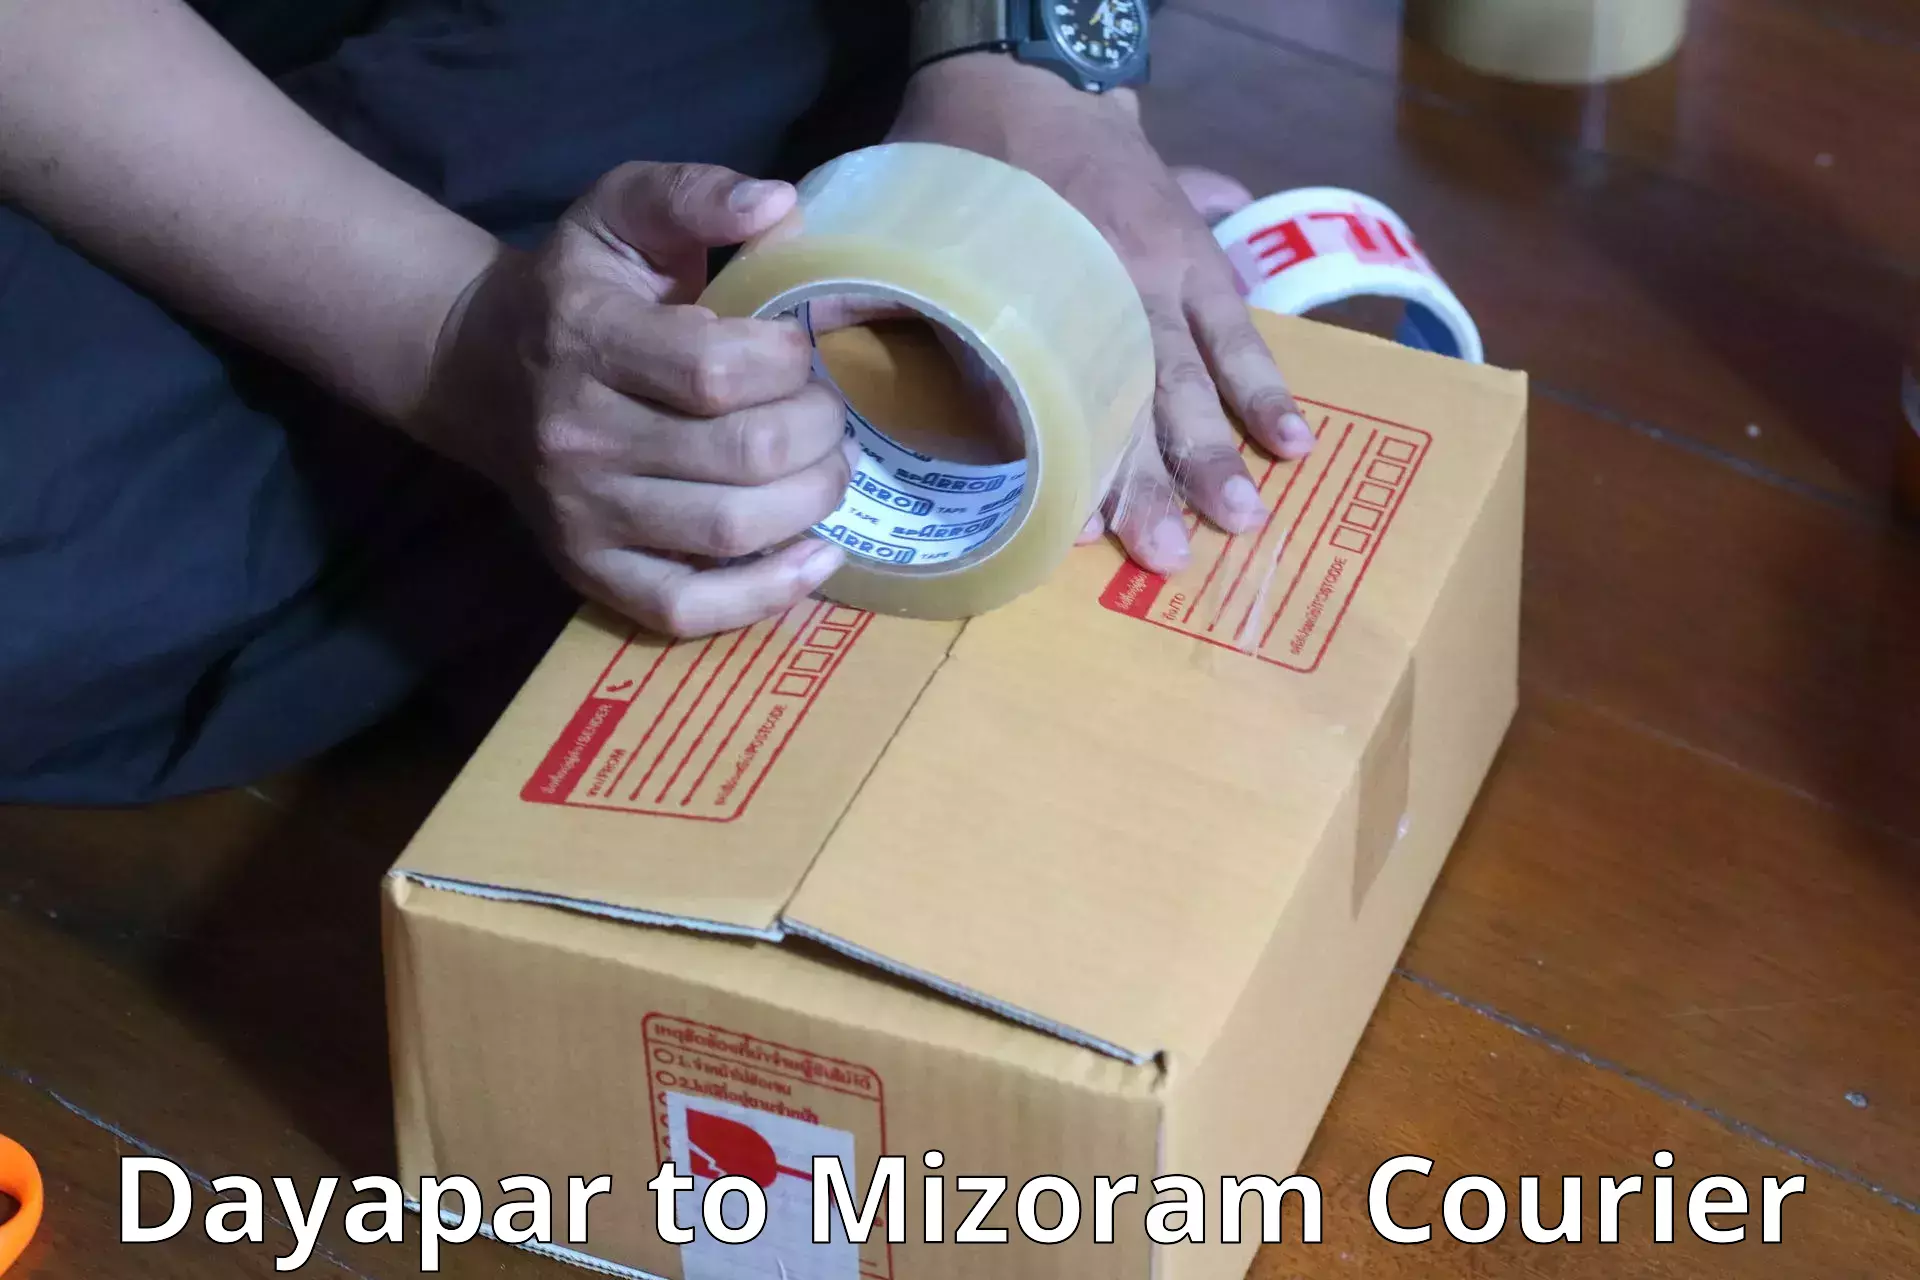 Single item baggage courier Dayapar to Mizoram